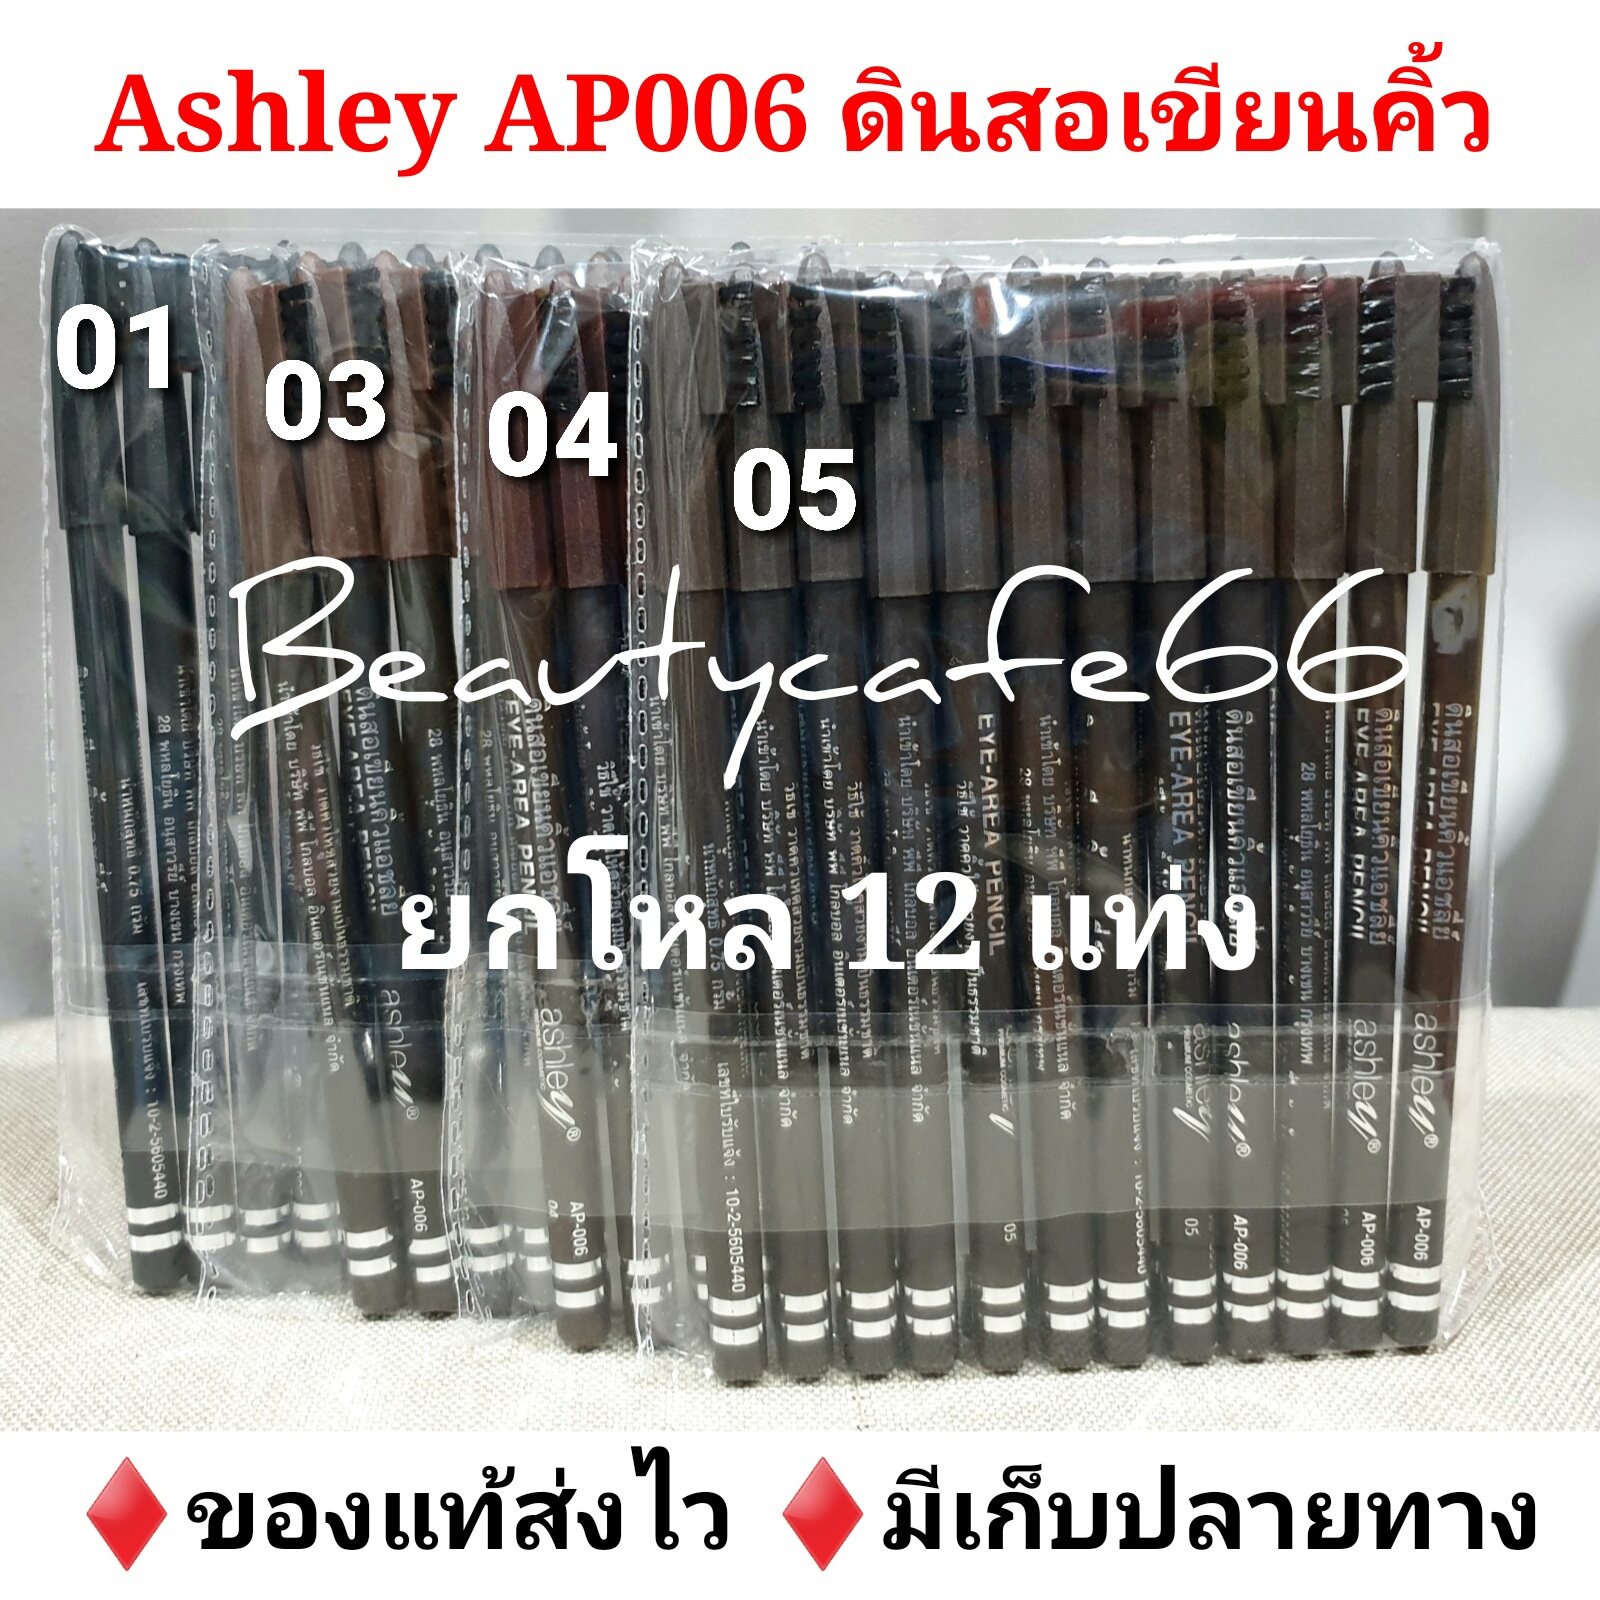 (ยกโหล 12 แท่ง) Ashley Eye Area Pencil ดินสอเขียนคิ้ว แอชลีย์ มีแปรงปัดคิ้ว รหัส AP006 ดินสอเขียนคิ้วกันน้ำ มีให้เลือก 4 เบอร์